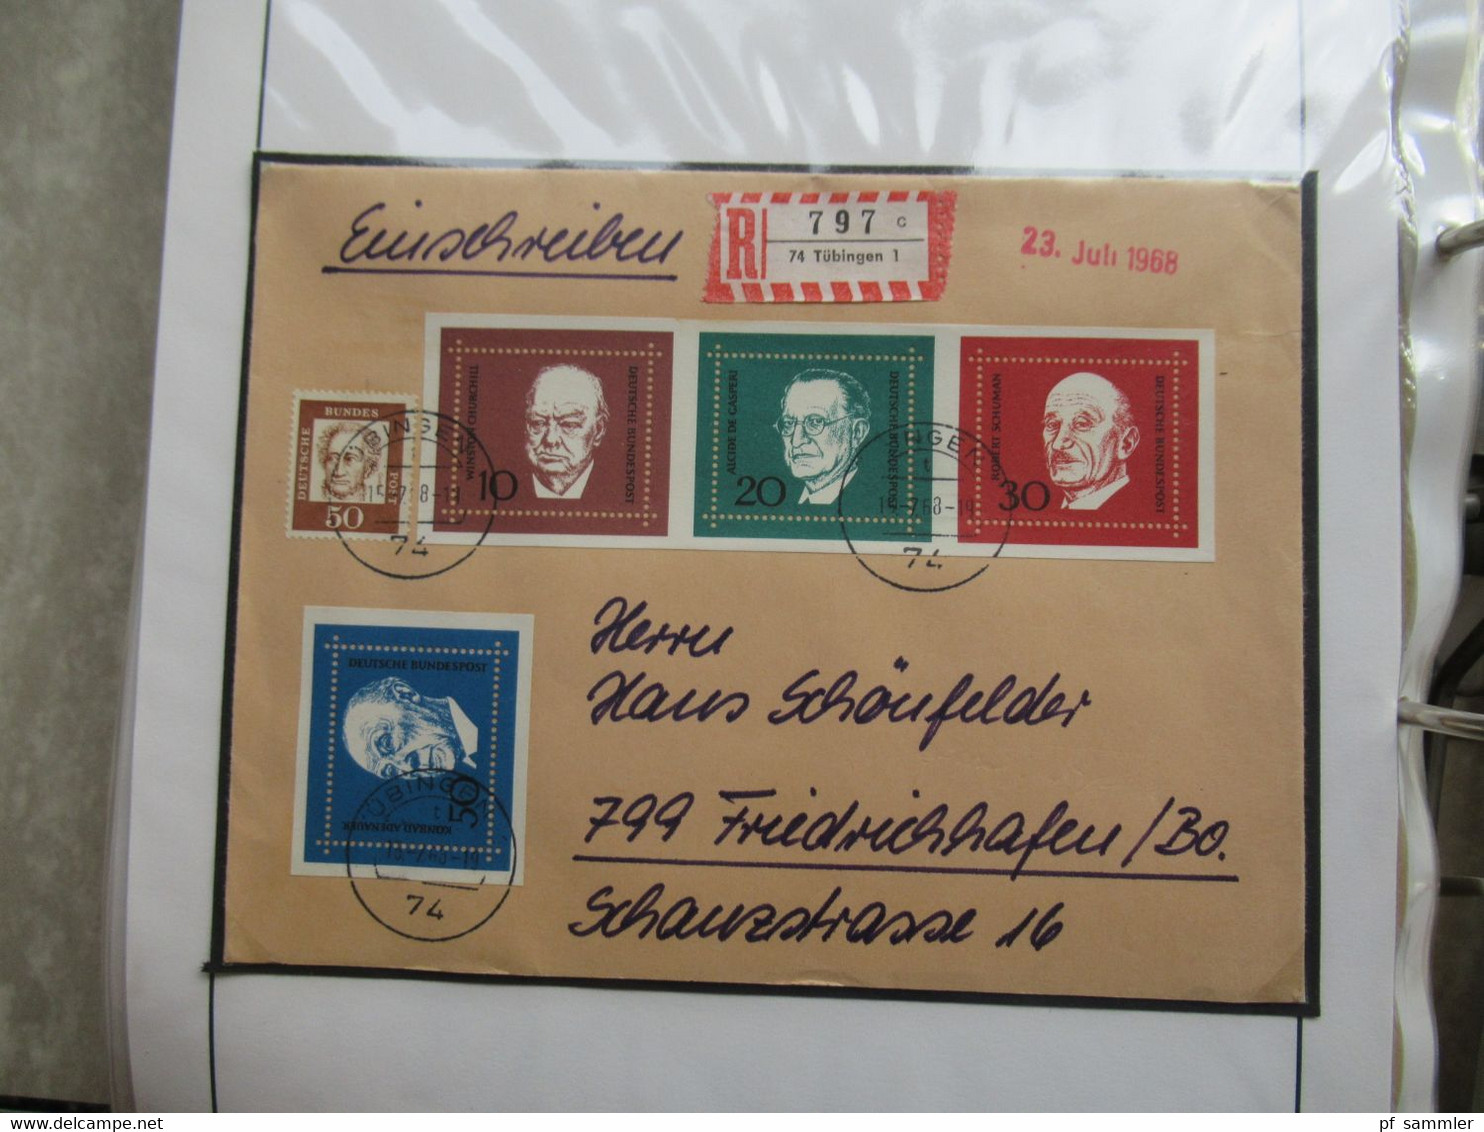 BRD / BUND Sammlung gestempelte Marken und die jeweiligen Belege im dicken Ordner /  Stöberposten! 1965 - 1968